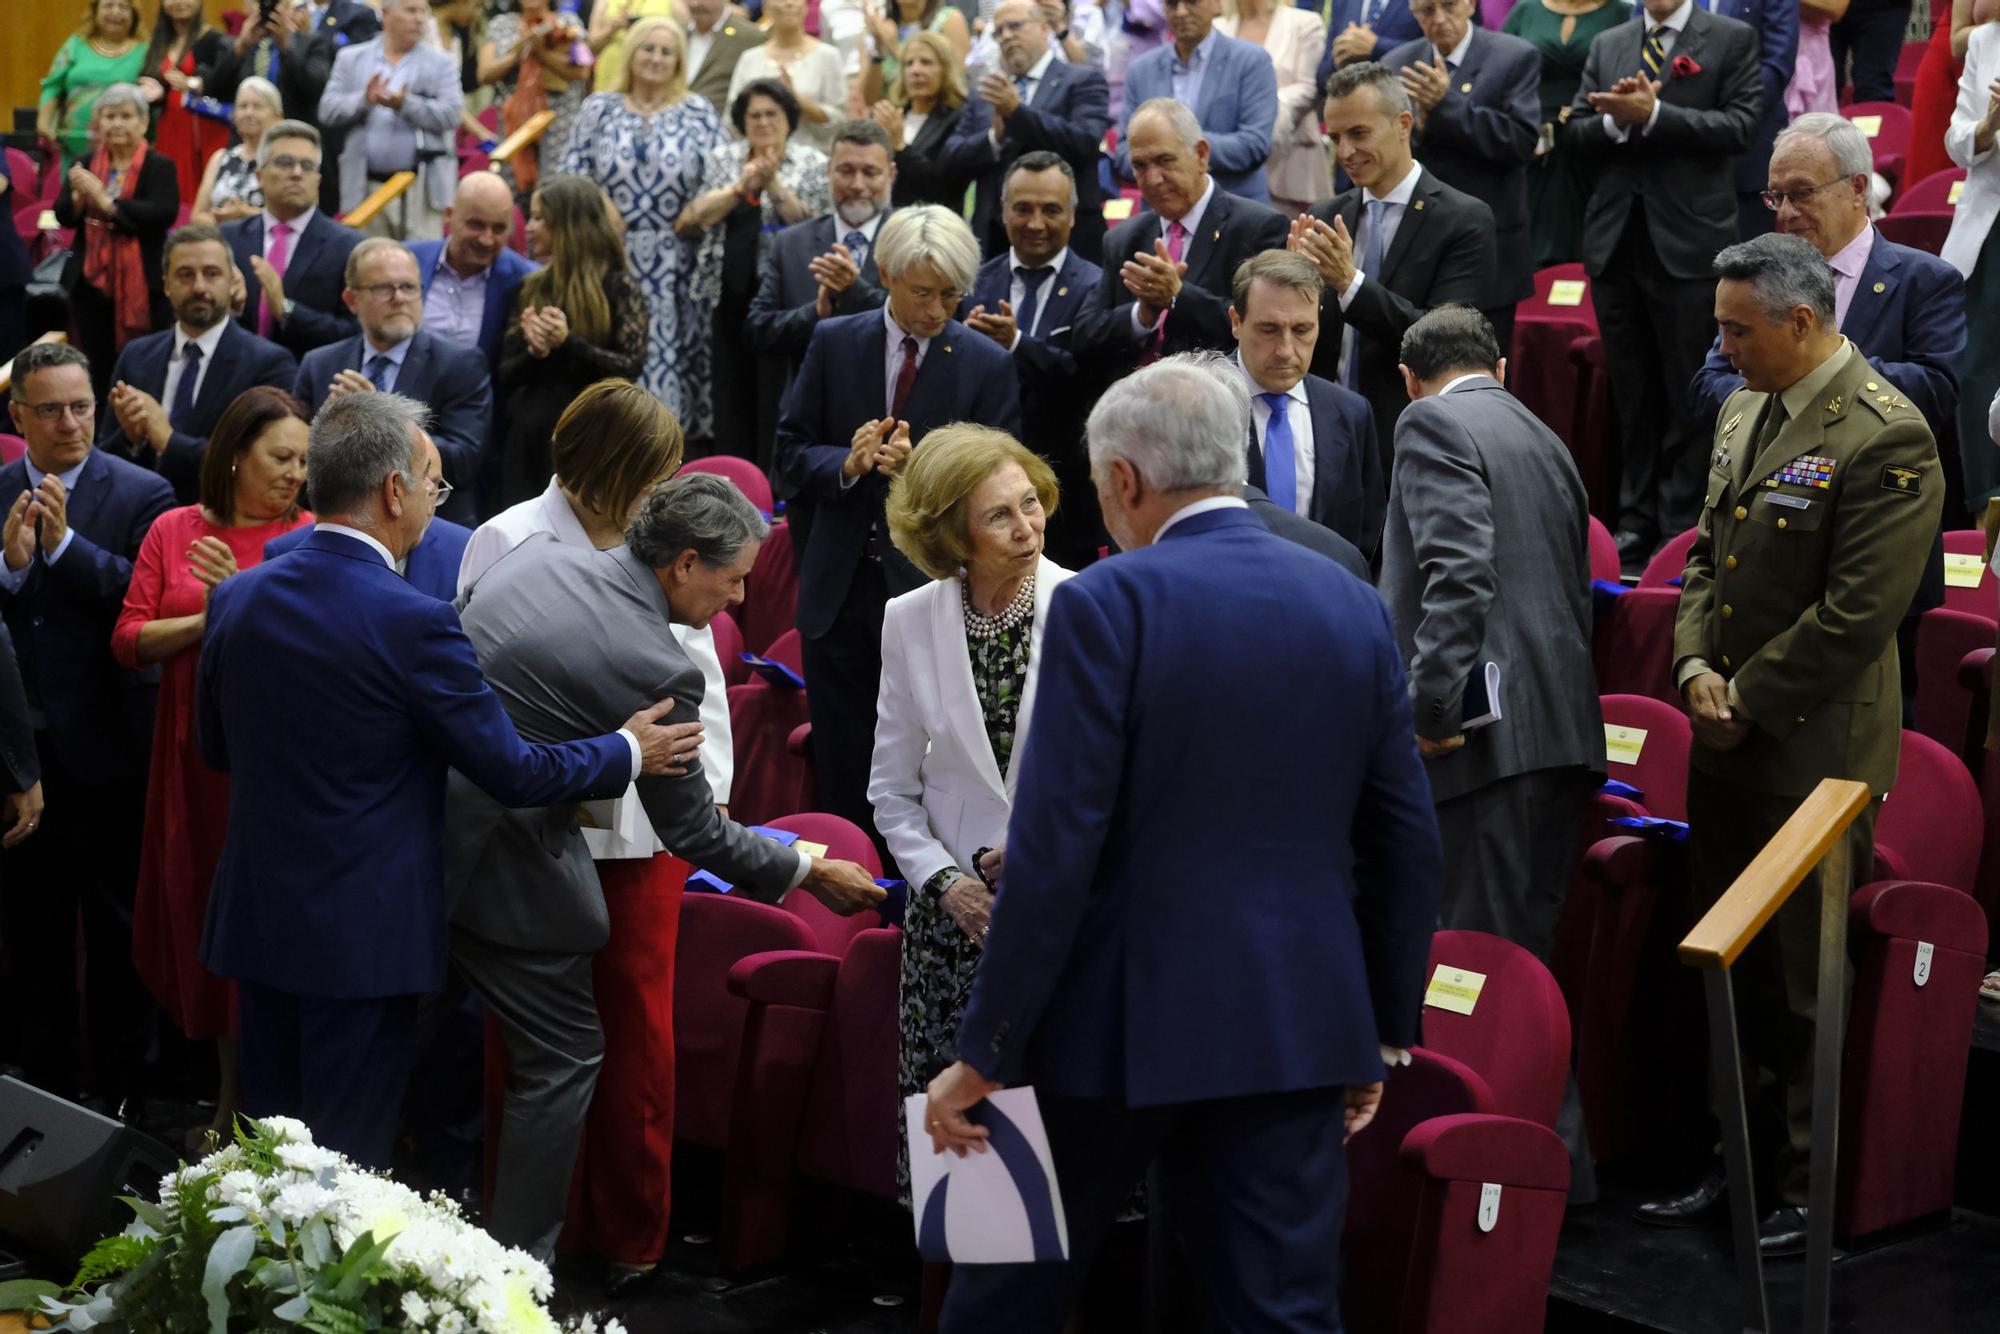 Acto Conmemorativo del 25 Aniversario del Banco de Alimentos de Las Palmas con la Reina Doña Sofía